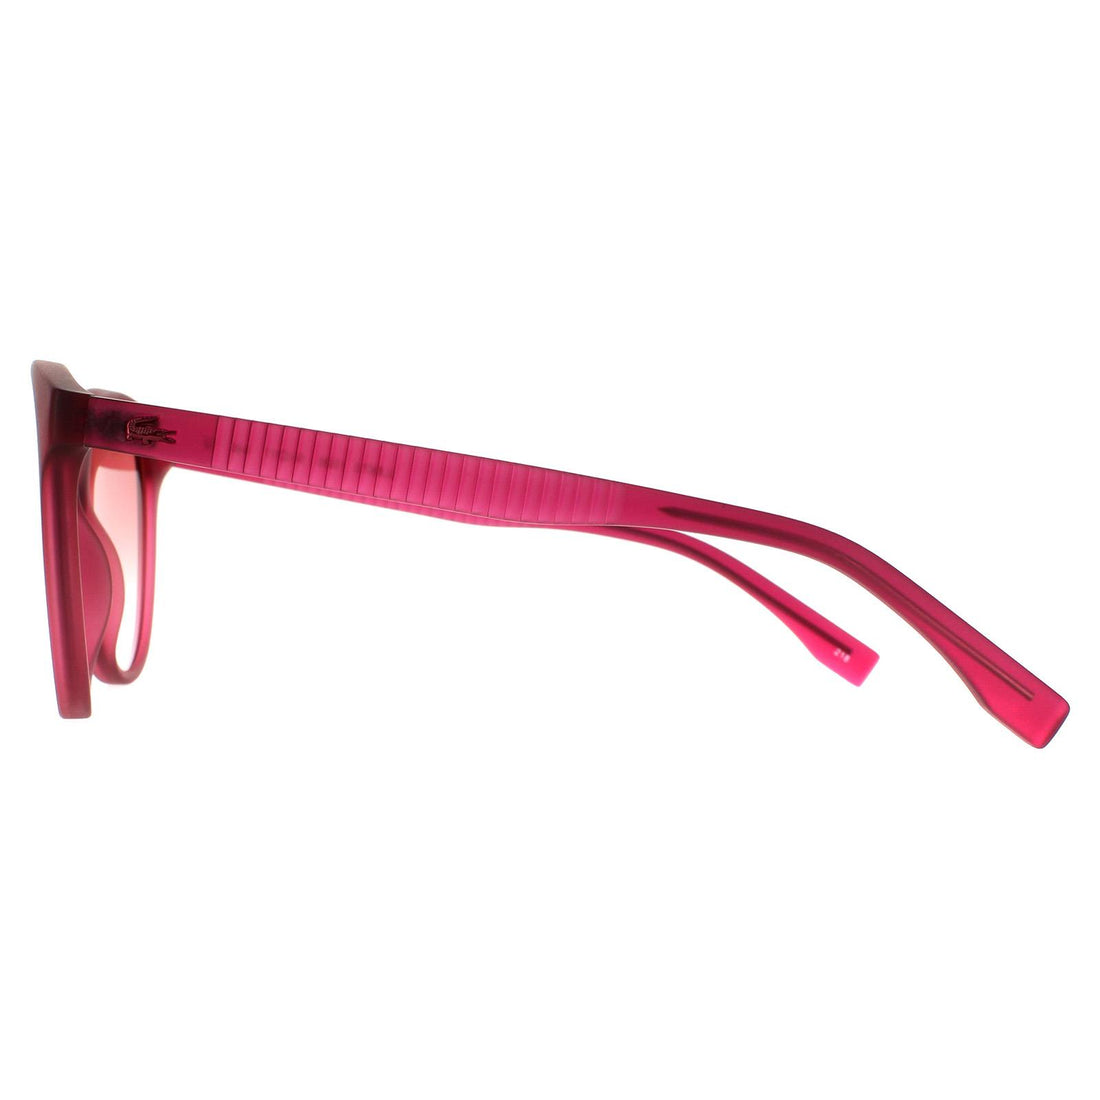 Lacoste Sunglasses L887S 526 Transparent Cyclamen Pink Gradient